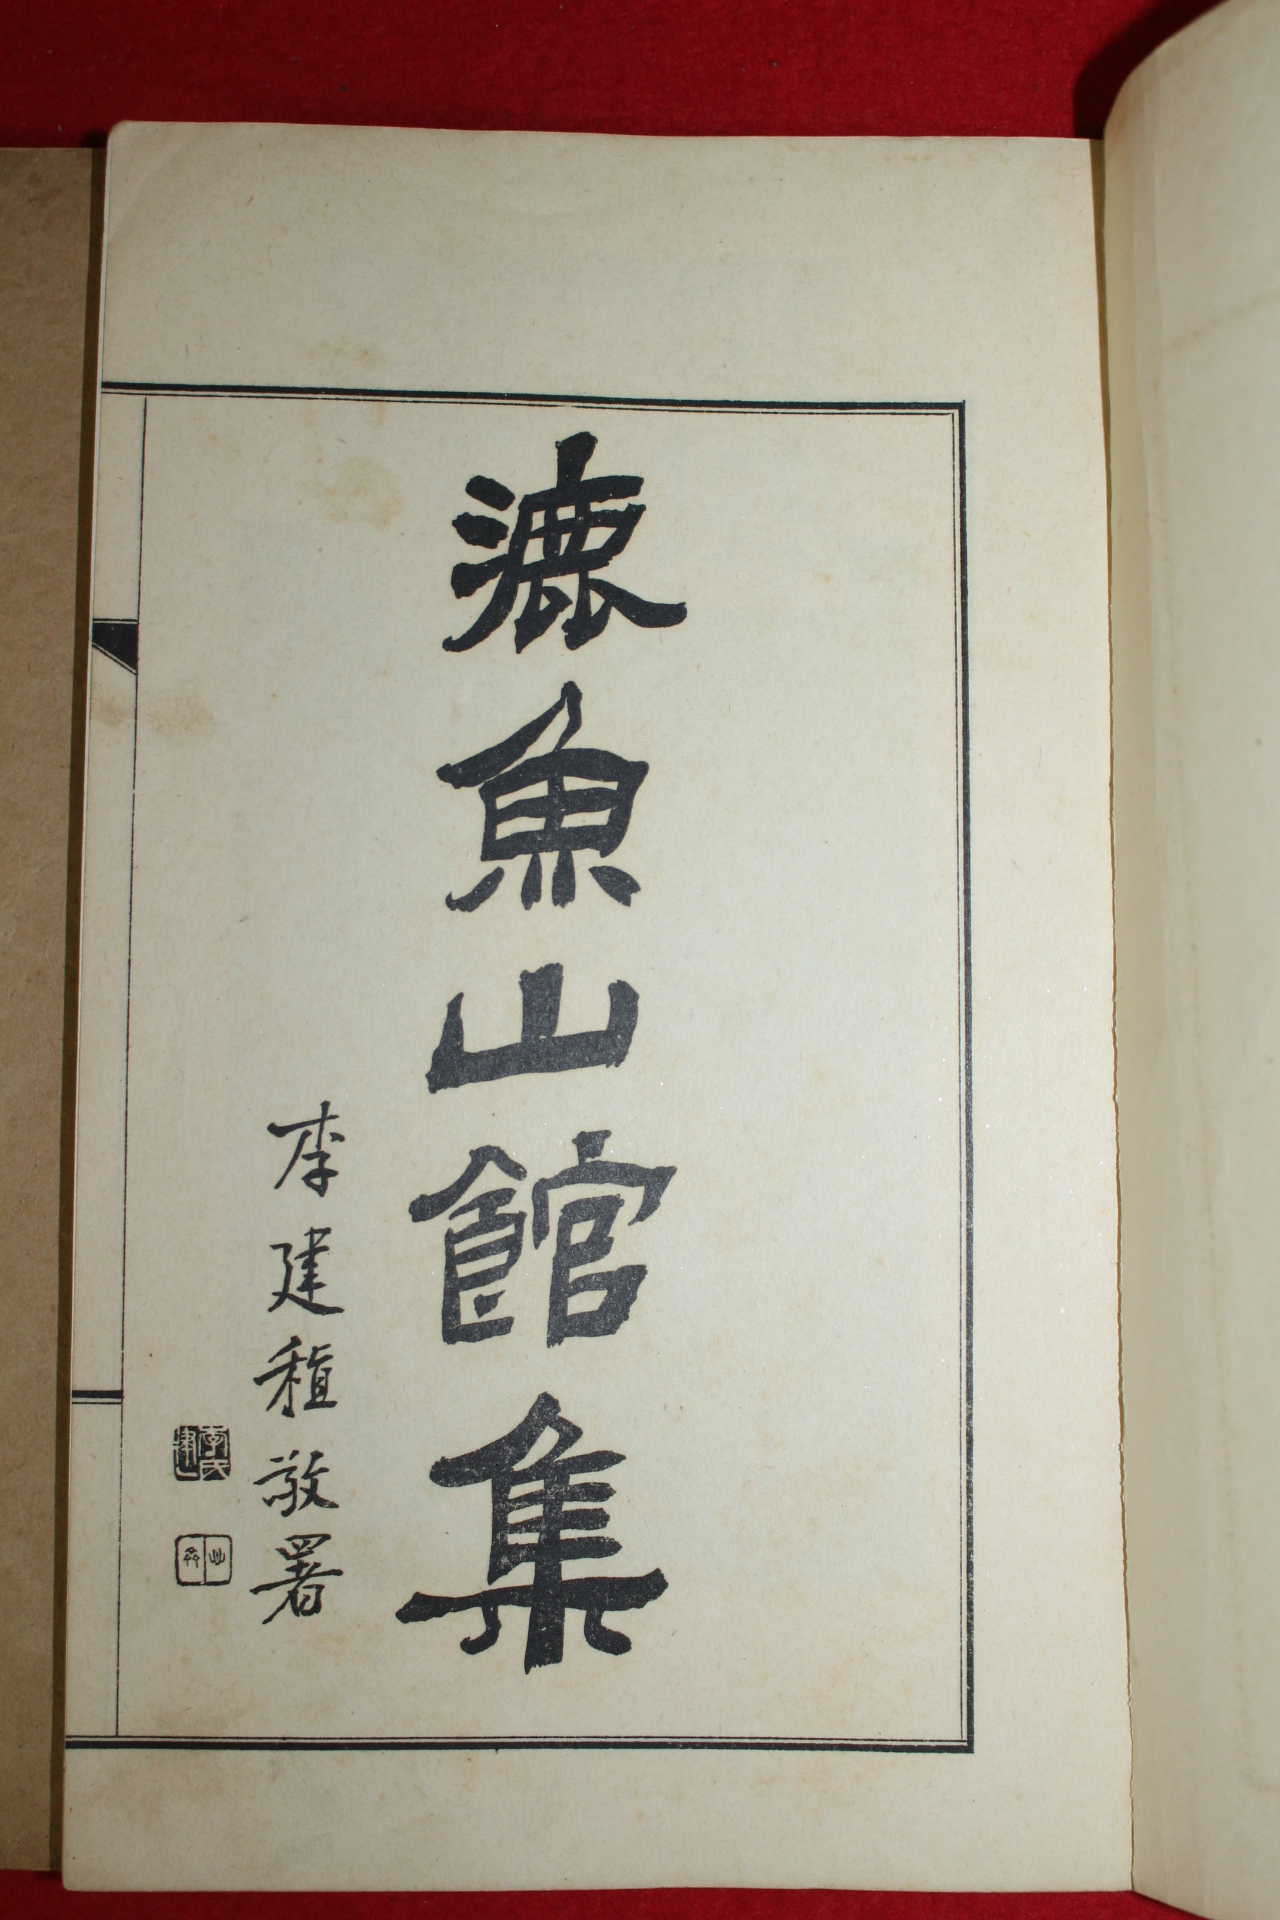 1941년 경성 정병조(鄭丙朝) 녹어산관집(漉魚山館集) 3책